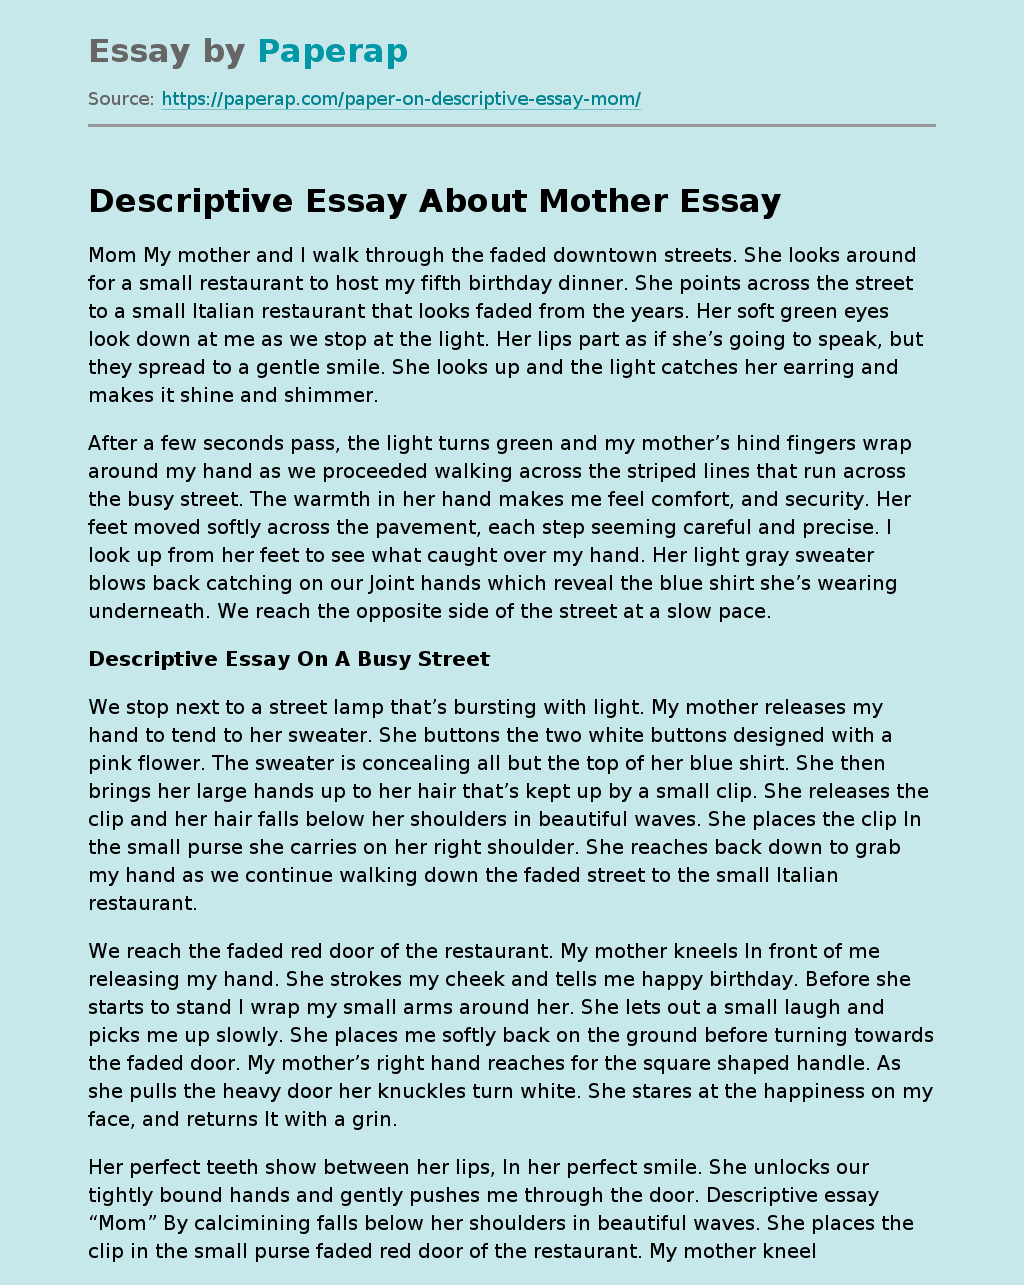 Descriptive Essay About Mother